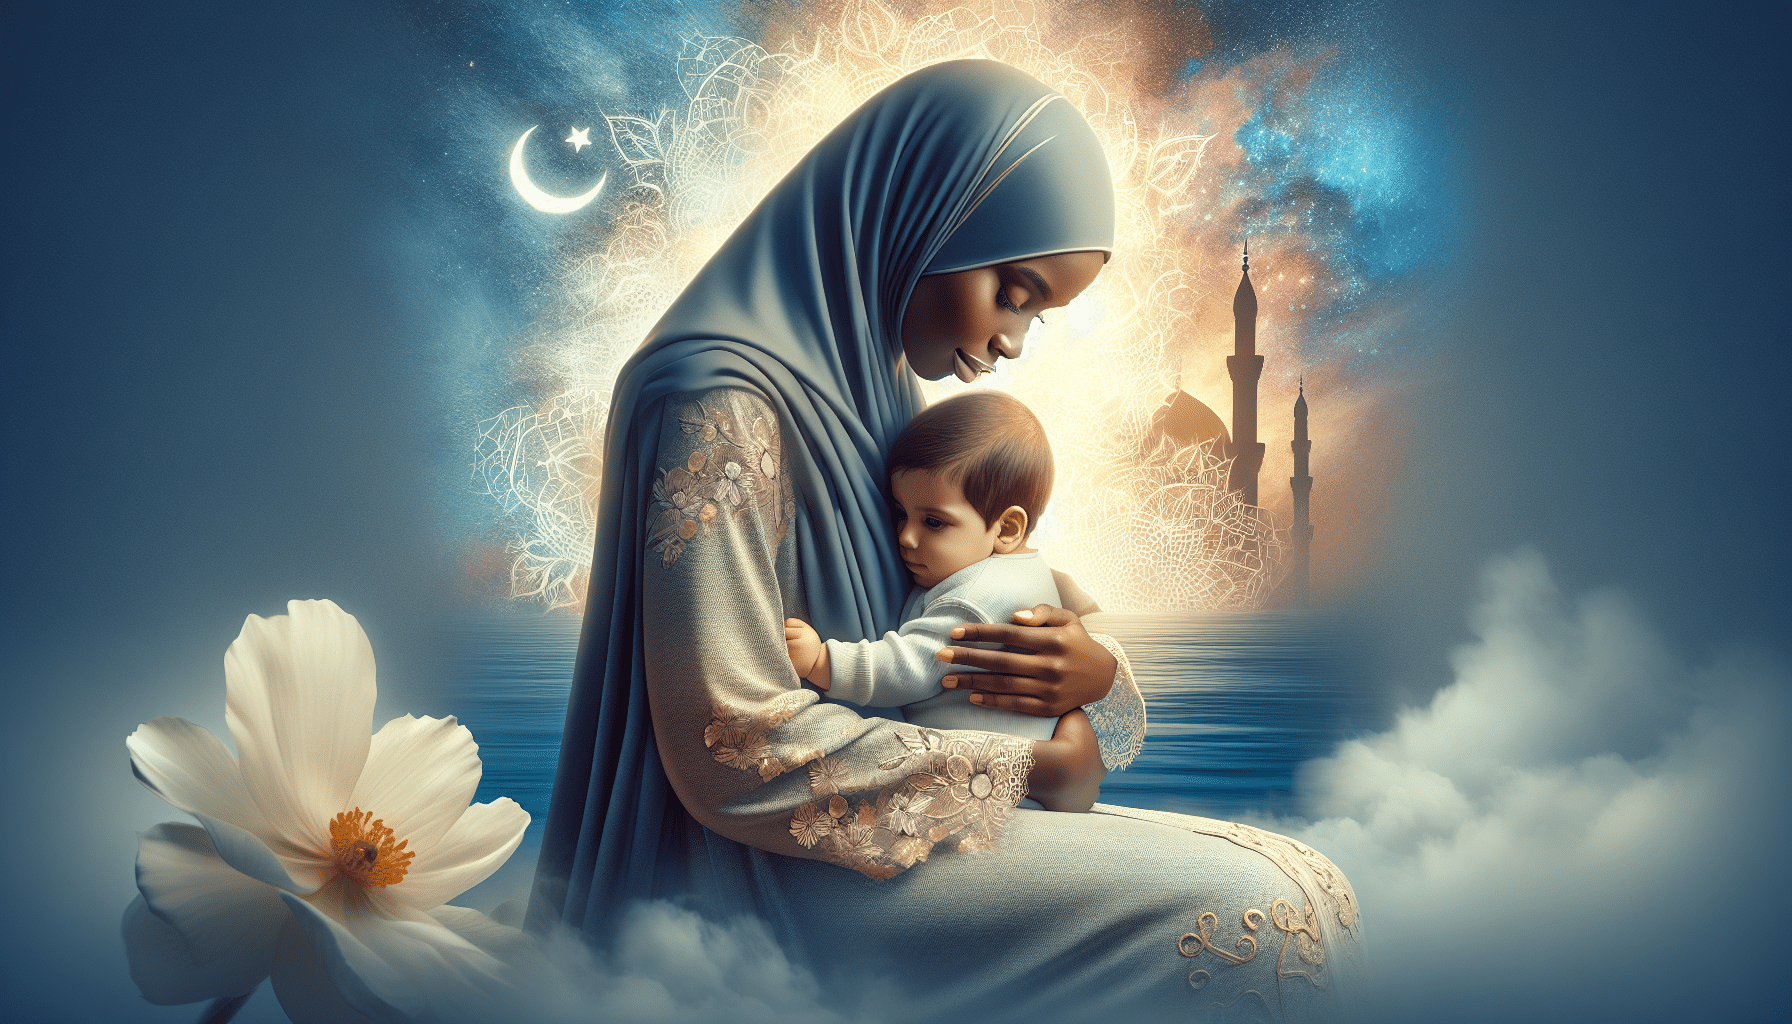 découvrez la signification de rêver de porter un bébé dans ses bras en islam. interprétation et symboles selon la tradition islamique.